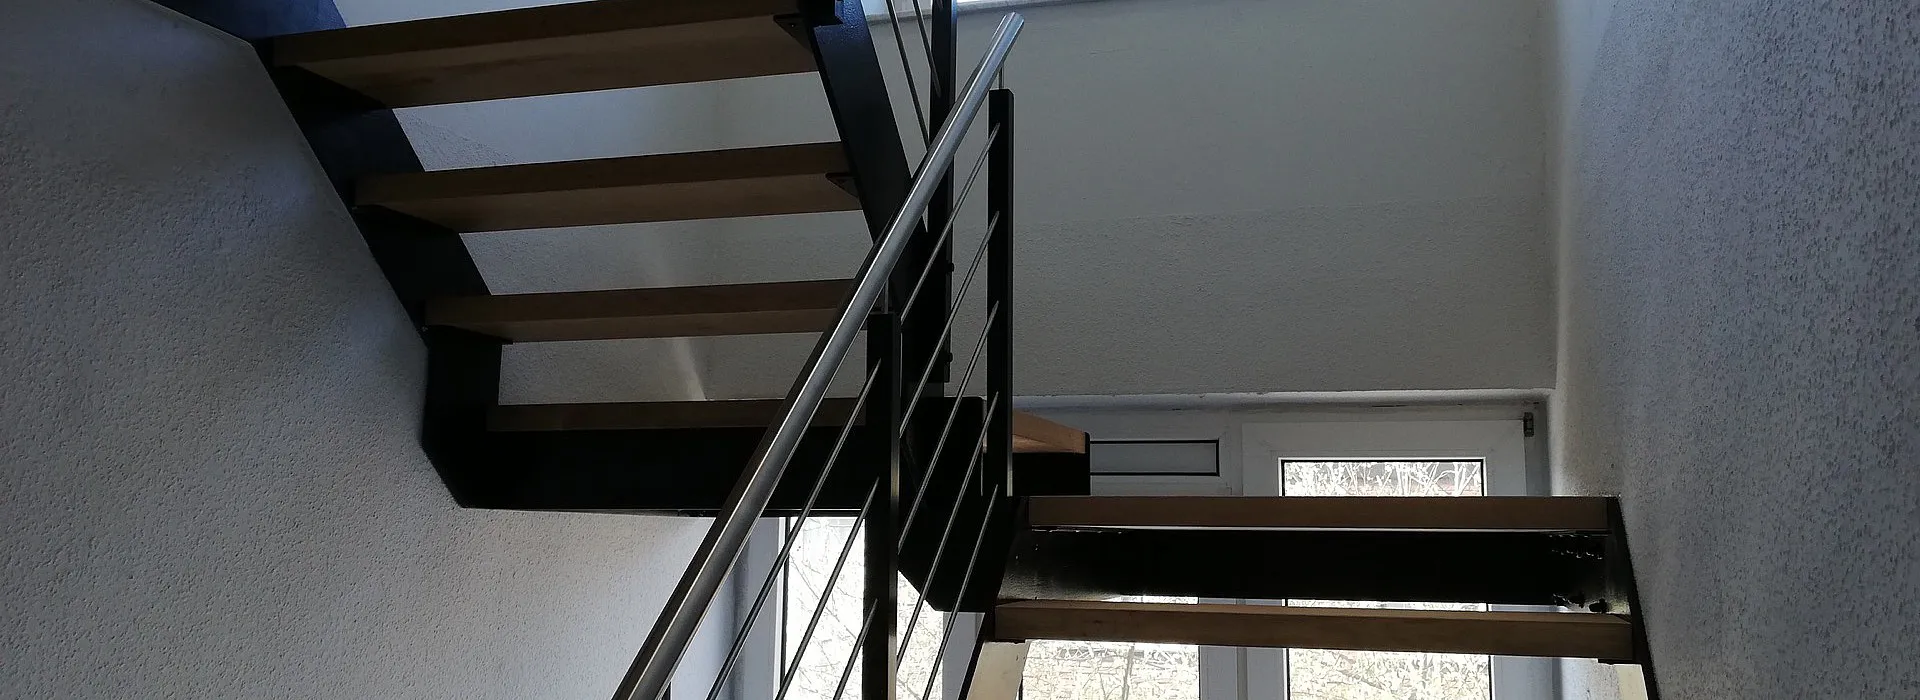 Indoortreppe mit Holzstufen und Stahlgeländer aus schwarzen und silbernen Elementen